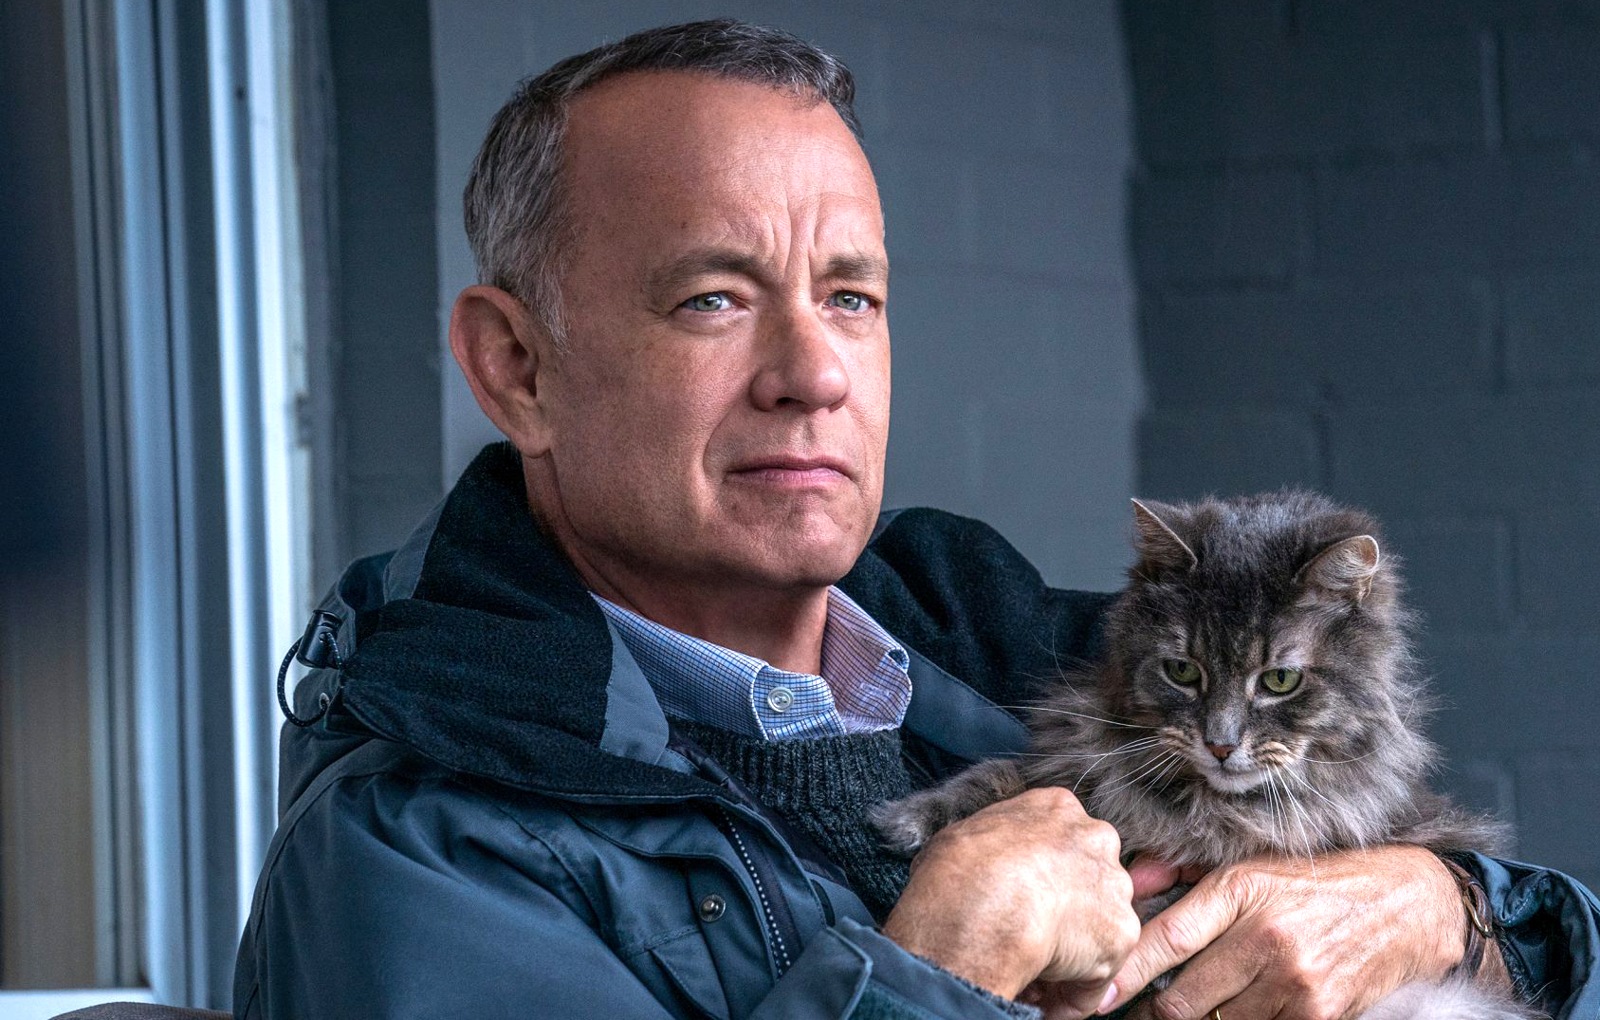 El peor vecino del mundo, una comedia emotiva e inspiradora con Tom Hanks disponible desde este viernes 21 de julio en Movistar Plus+